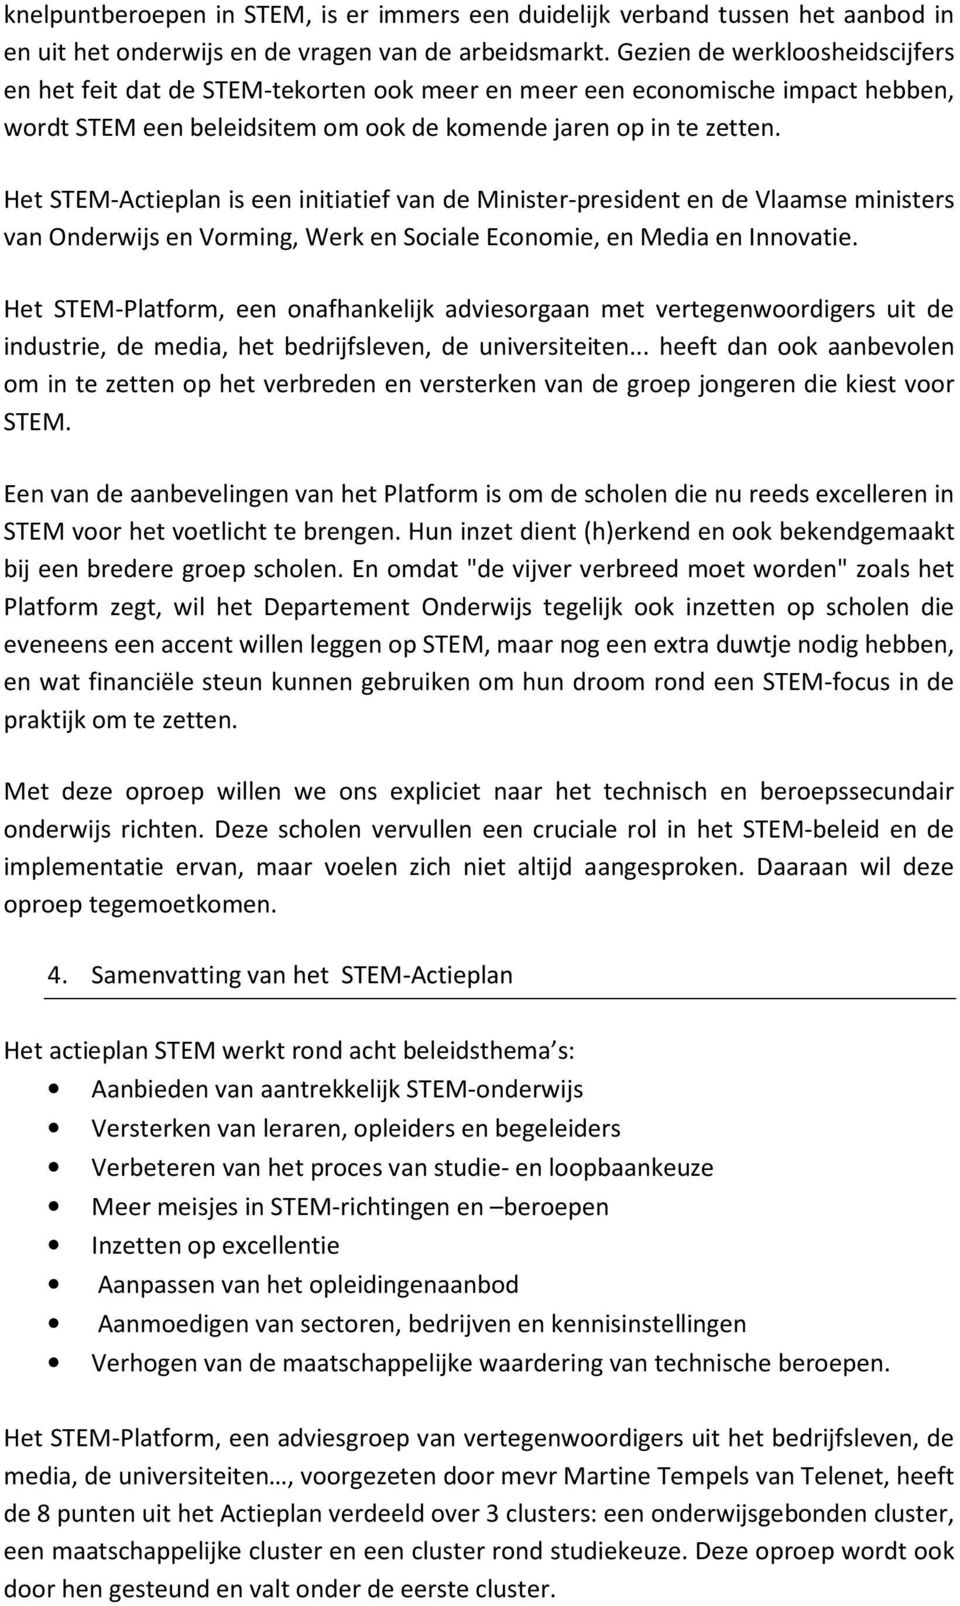 Het STEM-Actieplan is een initiatief van de Minister-president en de Vlaamse ministers van Onderwijs en Vorming, Werk en Sociale Economie, en Media en Innovatie.